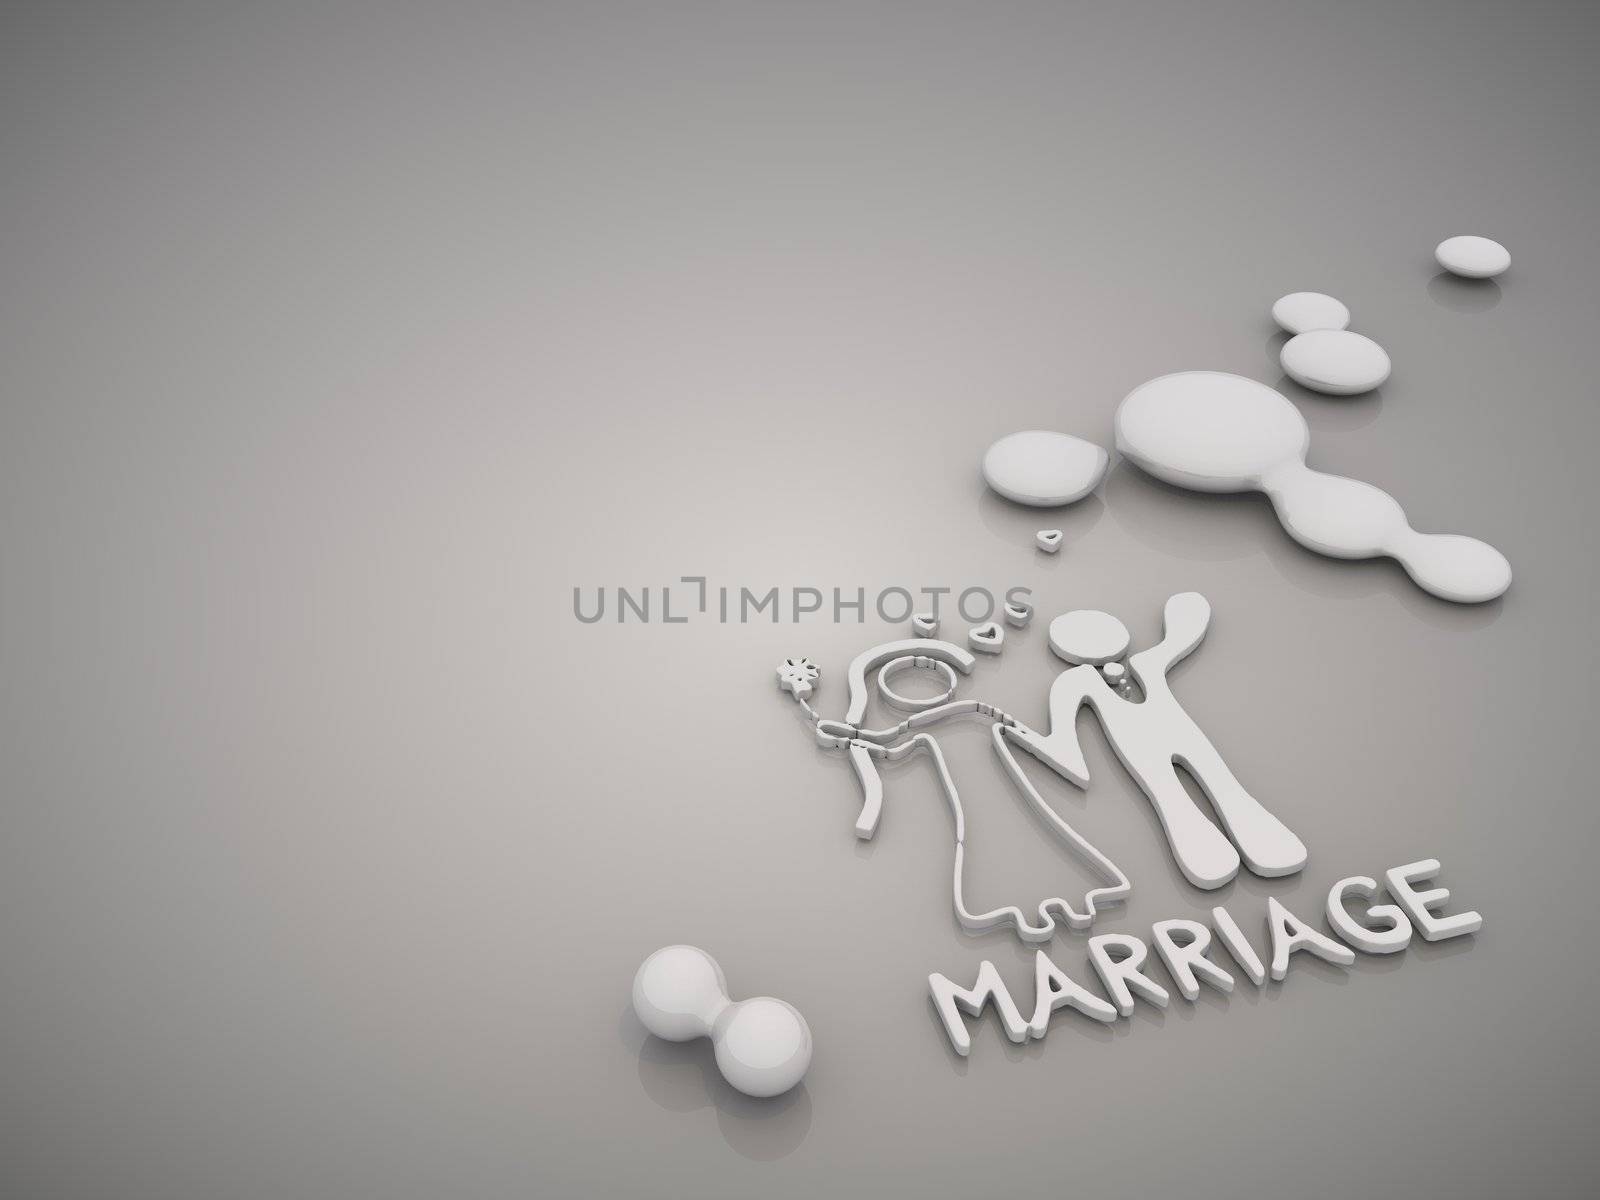 Elegant Marriage symbol in a stylish grey background by onirb